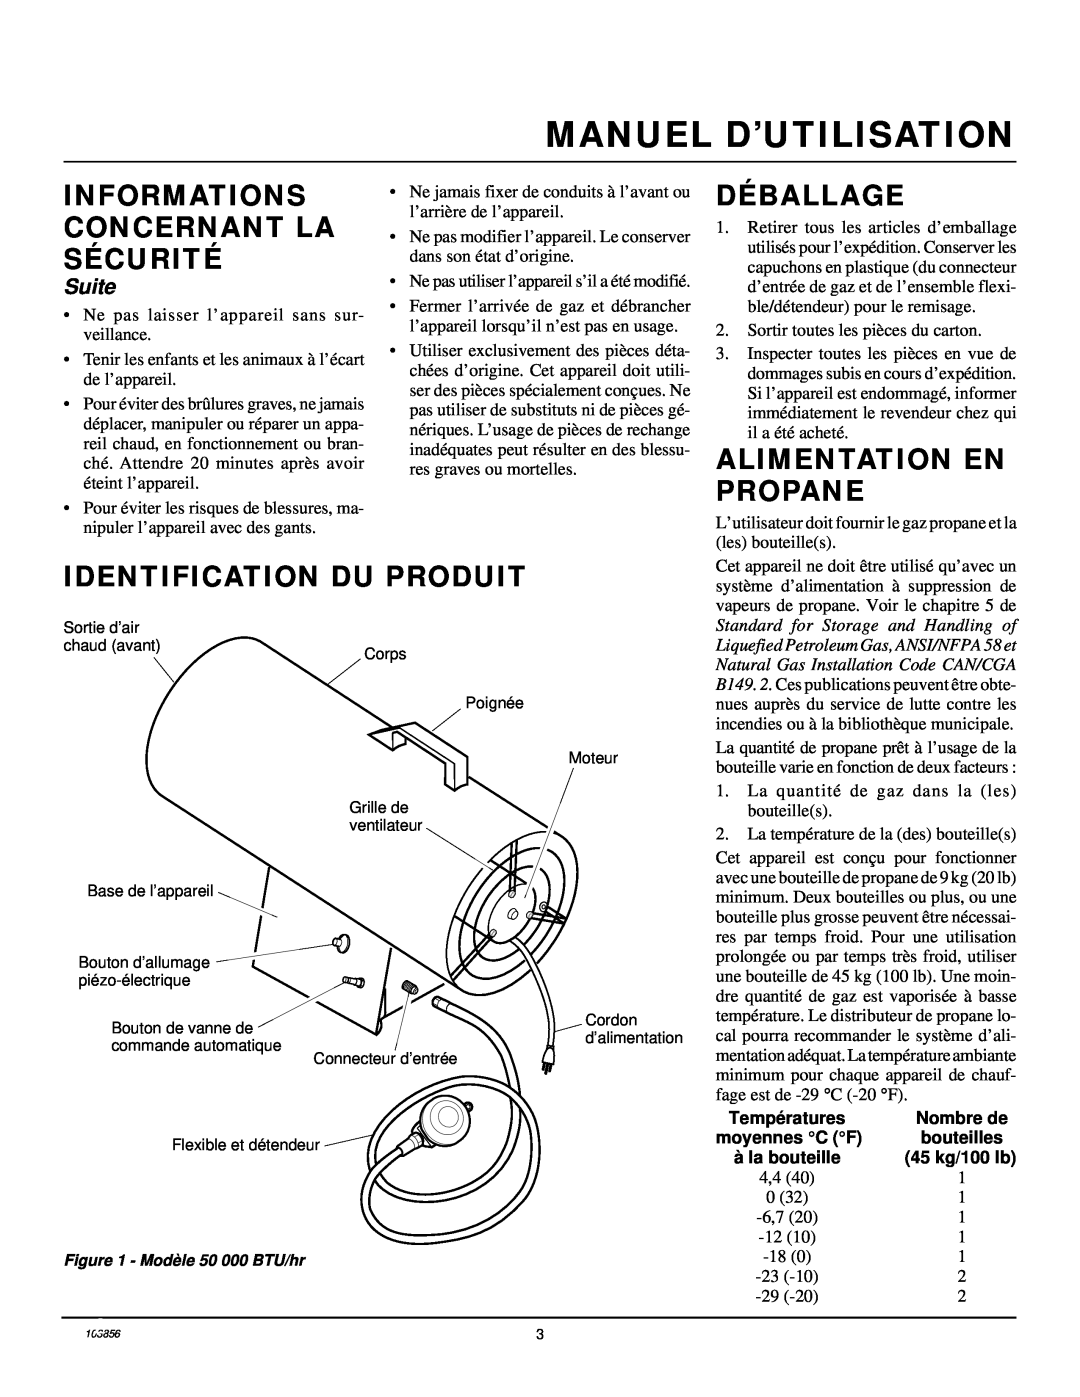 Desa RCLP50V owner manual Manuel D’Utilisation, Déballage, Alimentation En Propane, Identification Du Produit, Suite 